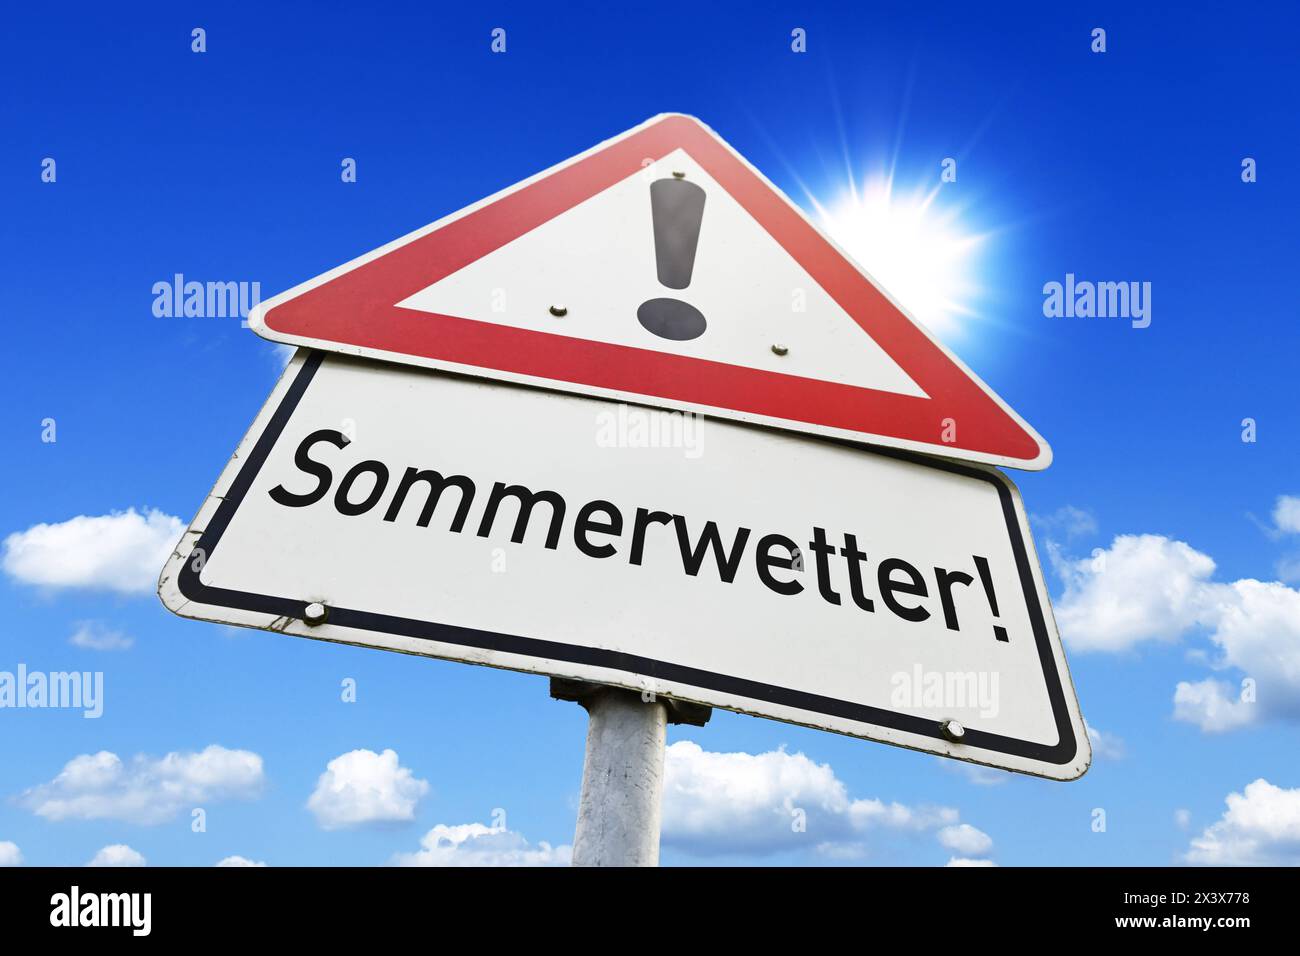 FOTOMONTAGE, Schild Sommerwetter *** FOTOMONTAGE, Summer weather sign Stock Photo